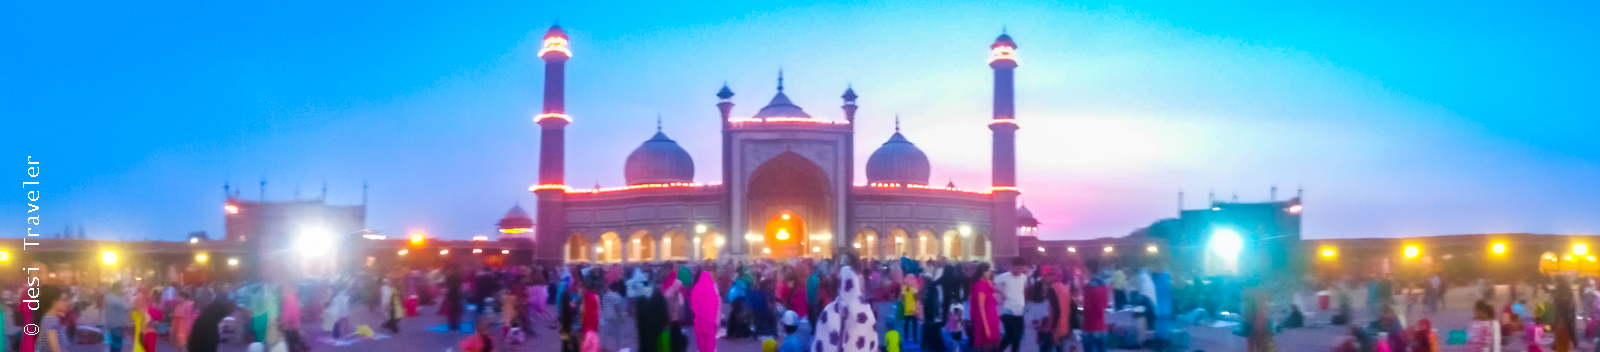 Jama Masjid Delhi during Ramazan 